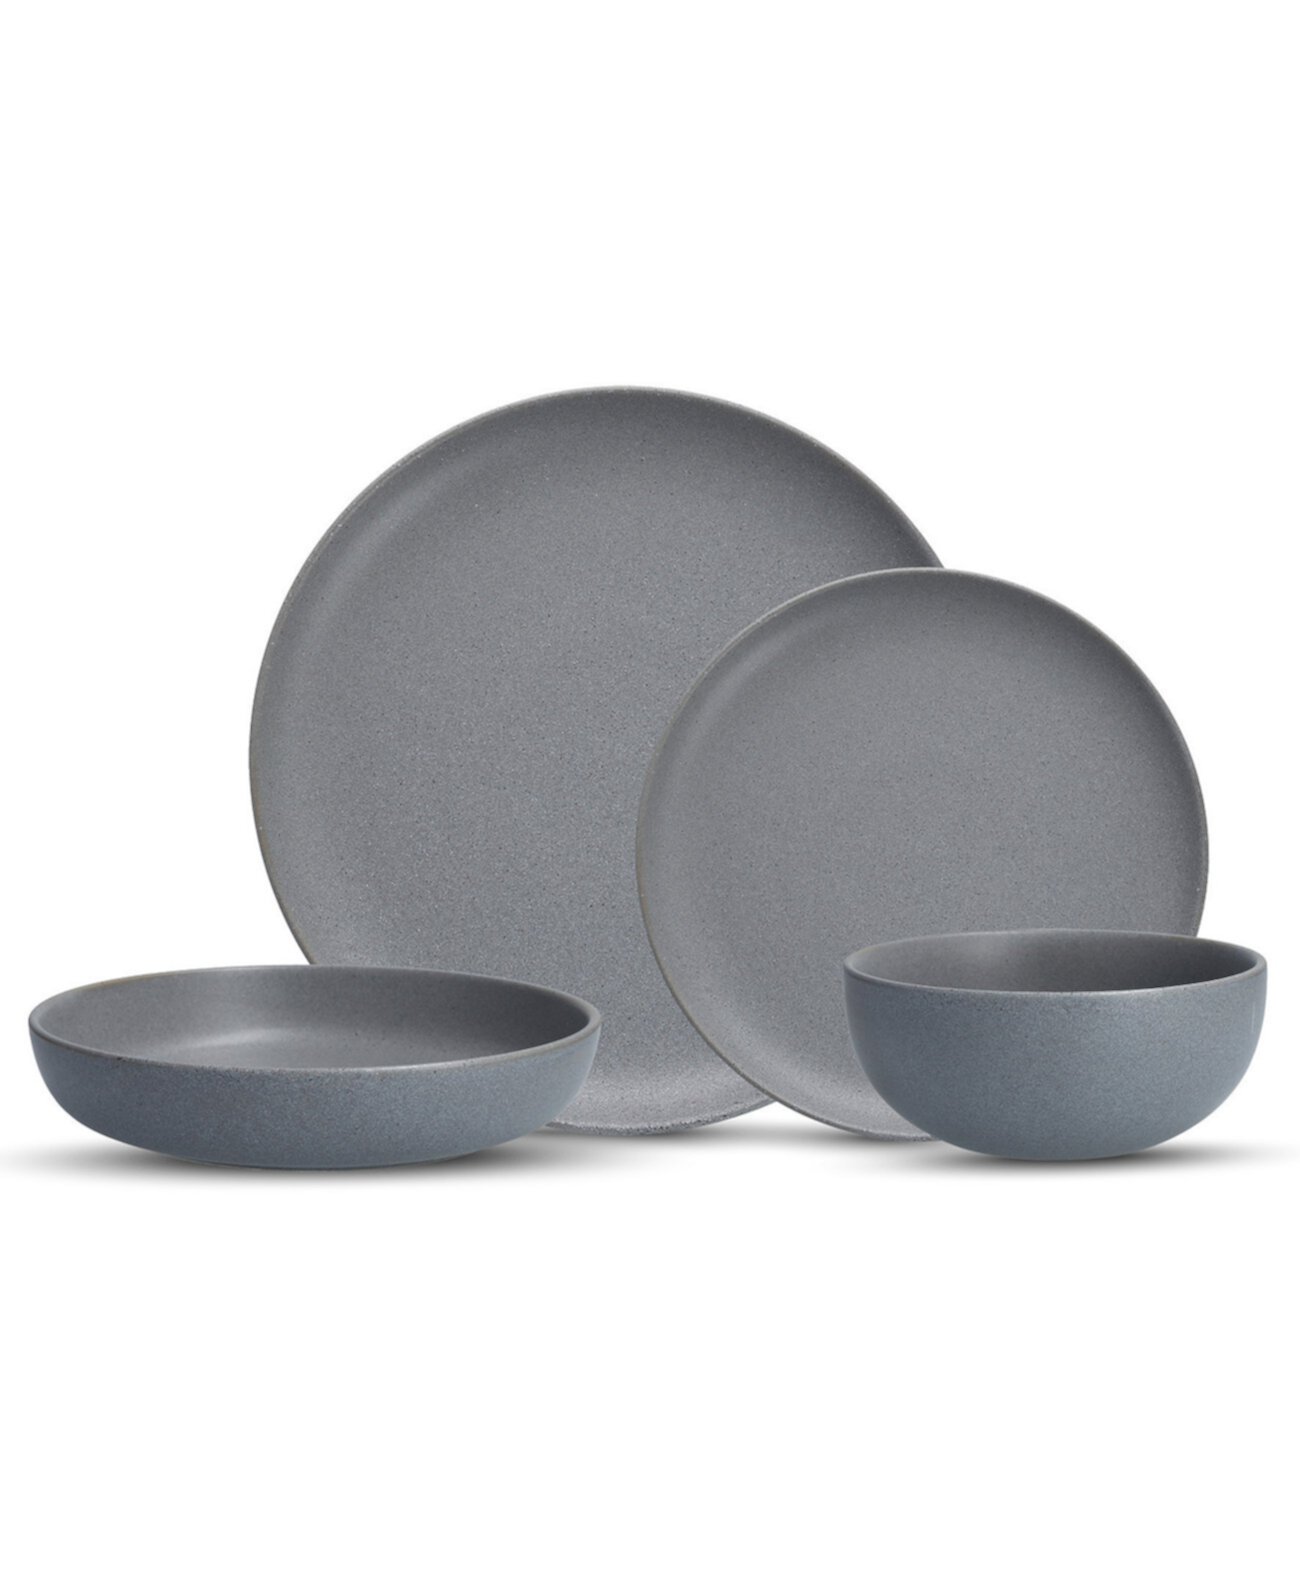 Набор столовой посуды Sound Cement, 16 предметов, сервиз на 4 персоны Fortessa